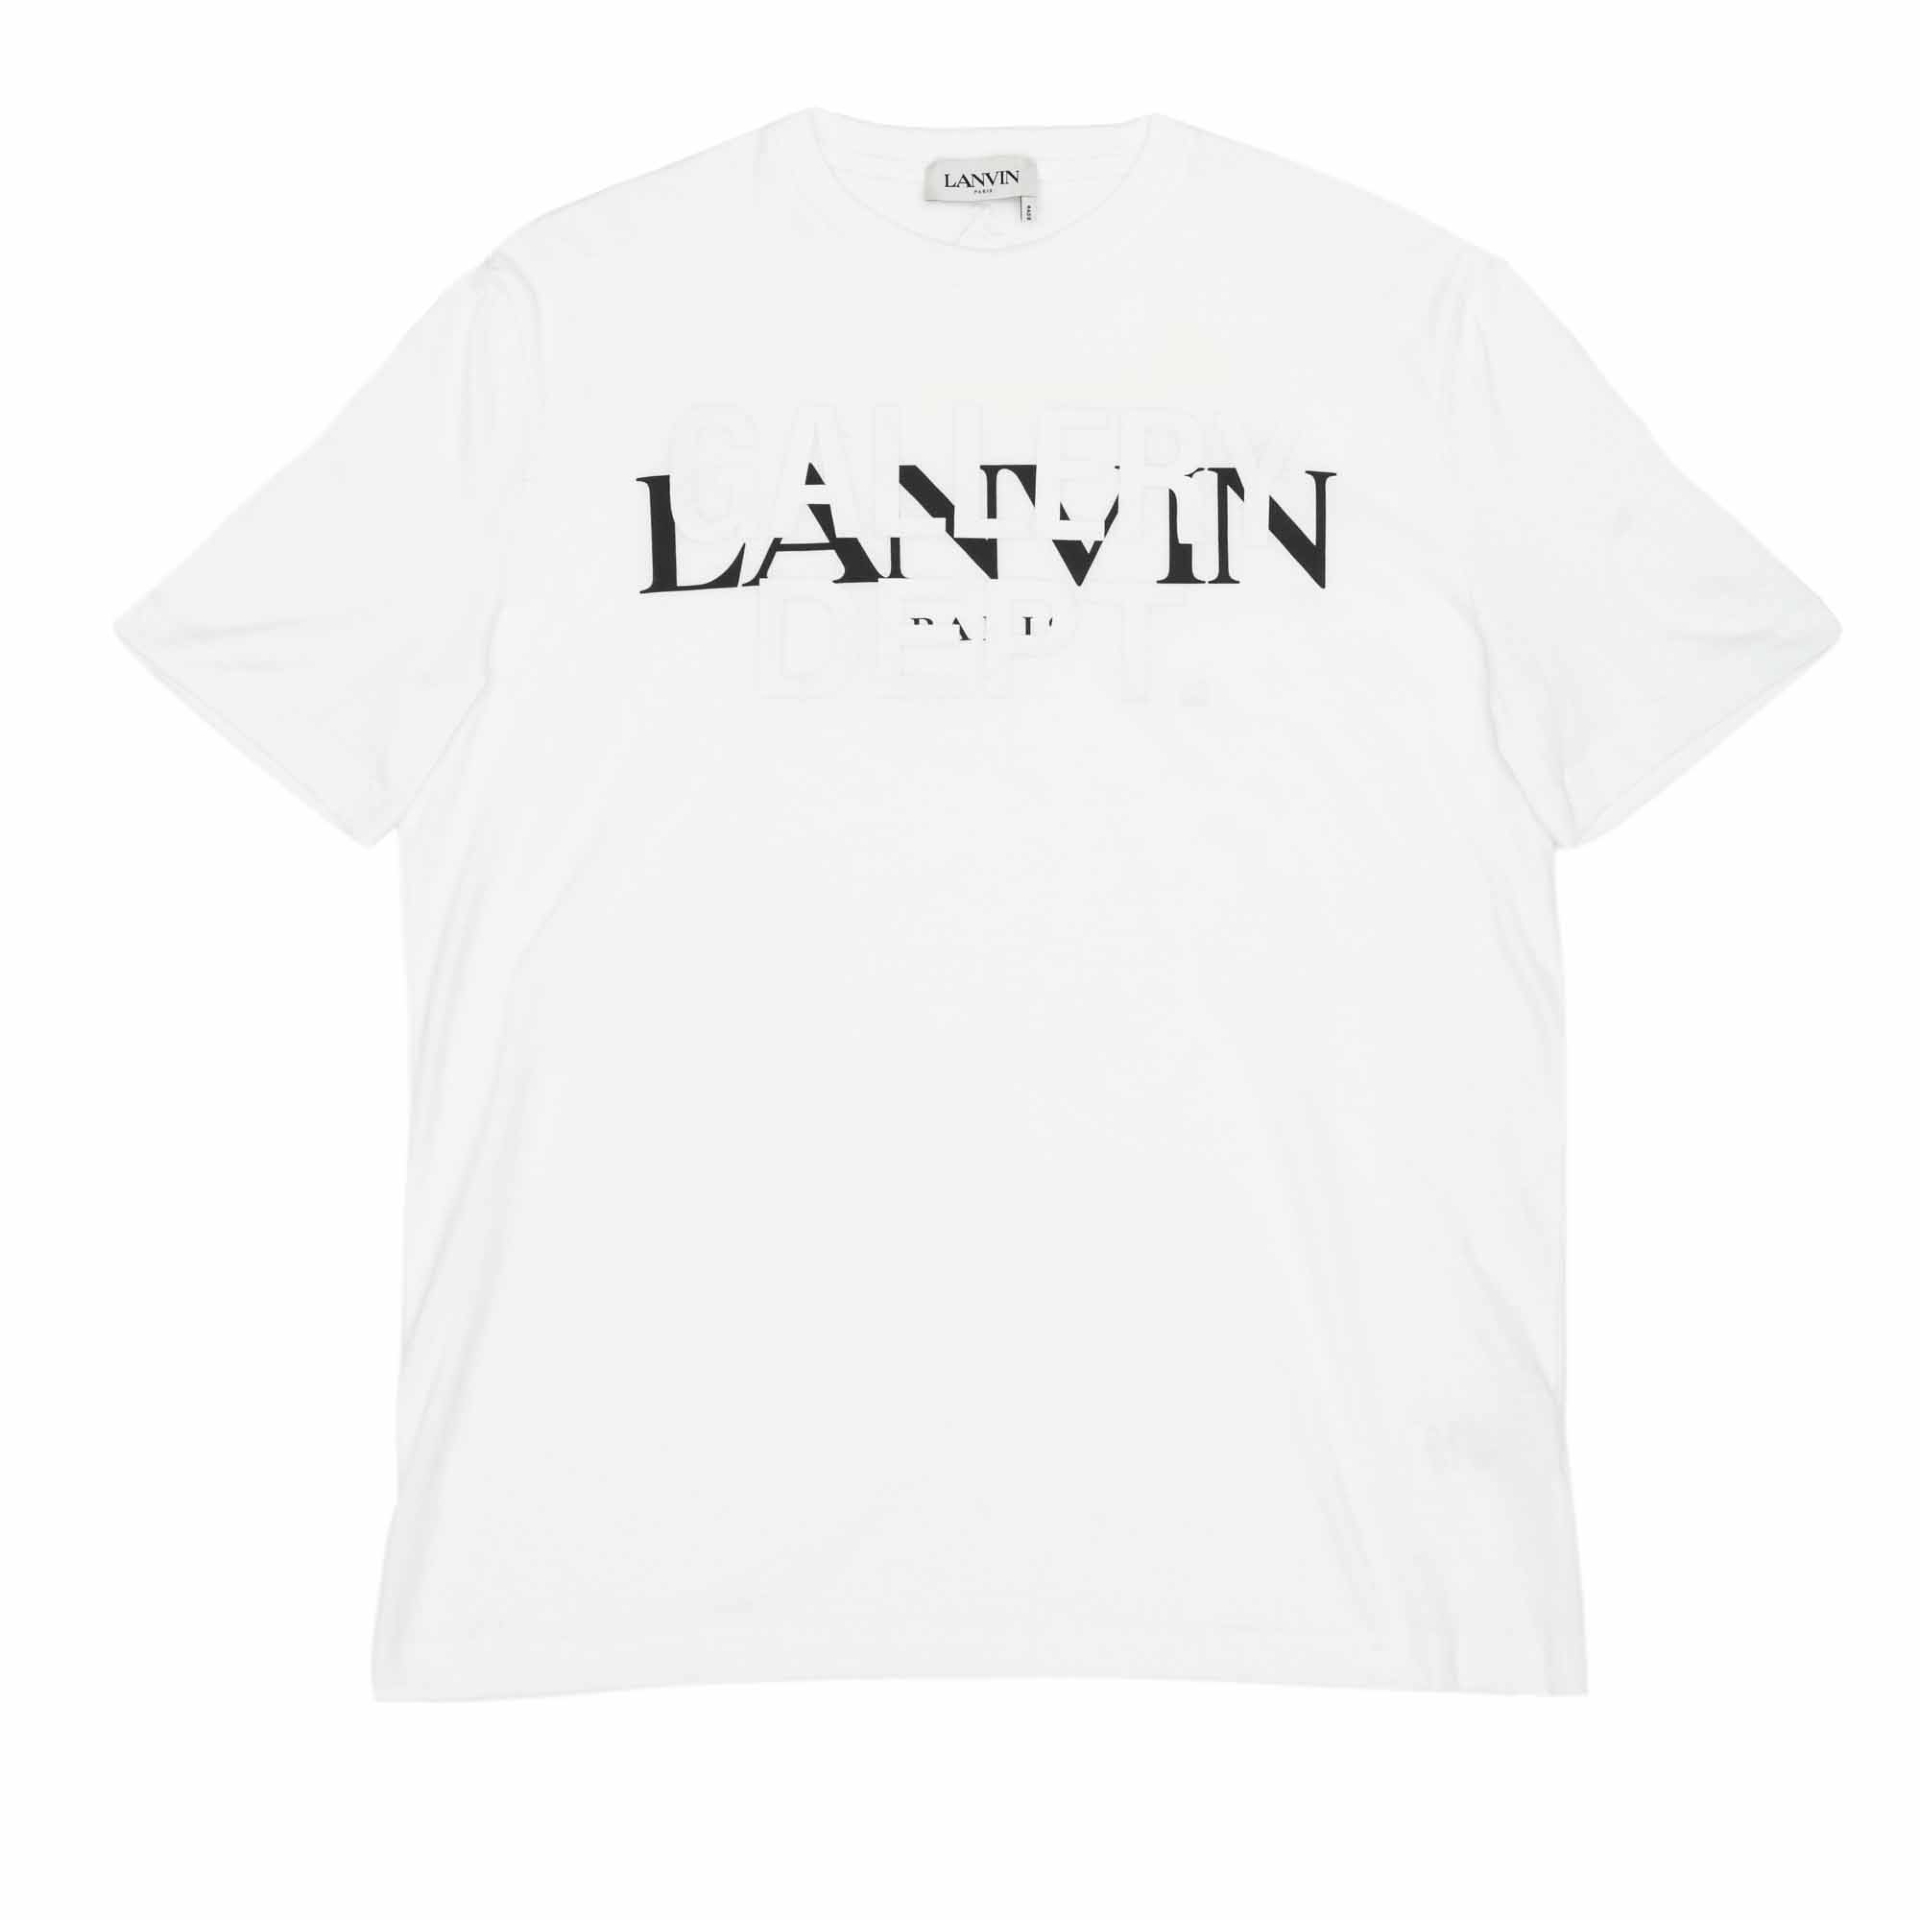 Хлопковая футболка Lanvin x Gallery Dept, Lanvin, 30&nbsp;800 руб. (ЦУМ)